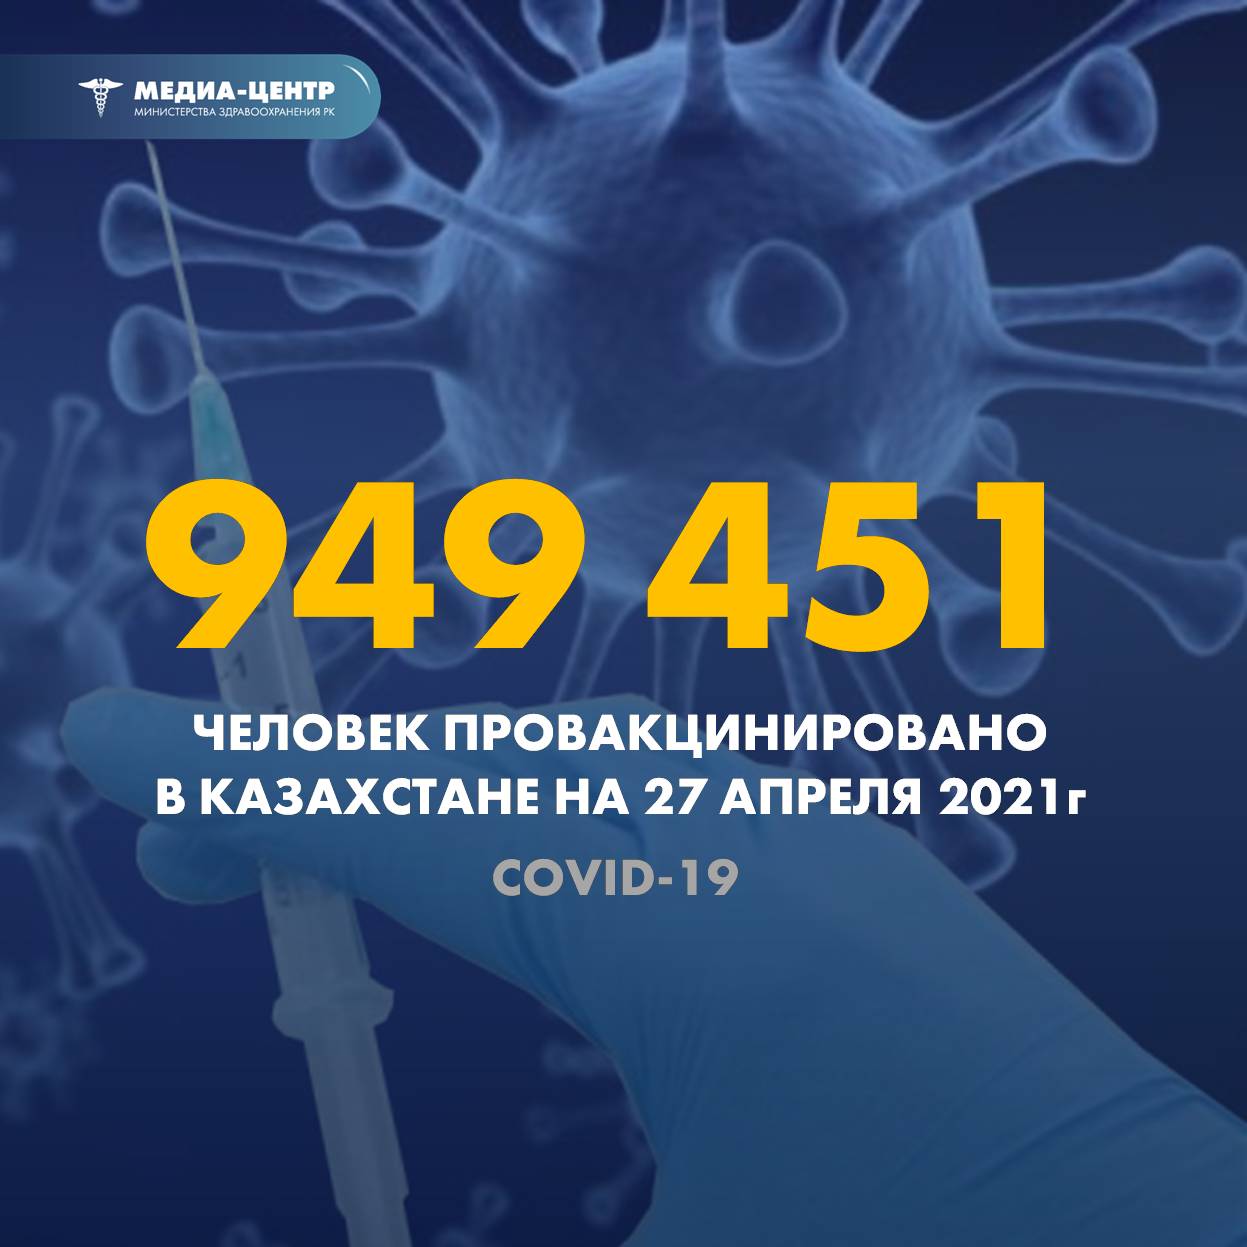 949 451 человек провакцинировано в Казахстане на 27 апреля 2021 г